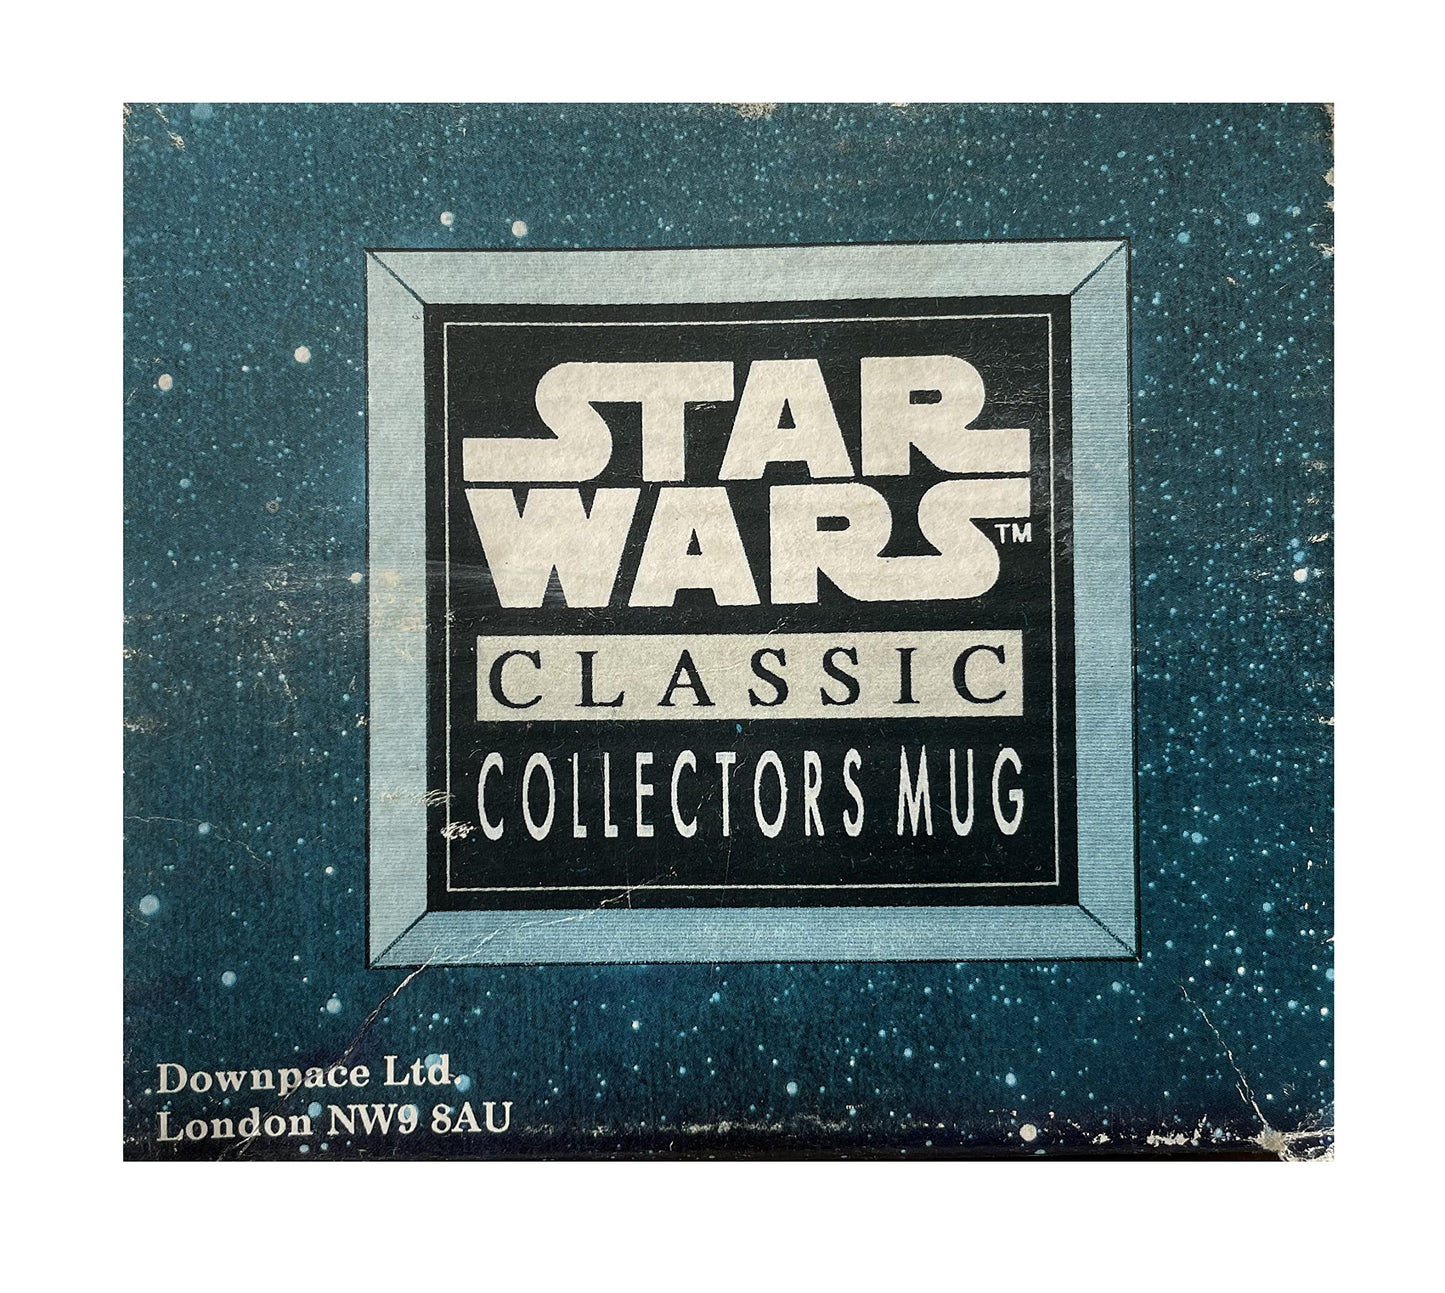 Vintage Star Wars 1996 Original Trilogy C-3PO Collectable Ceramic Mug - Shop Stock Room Find